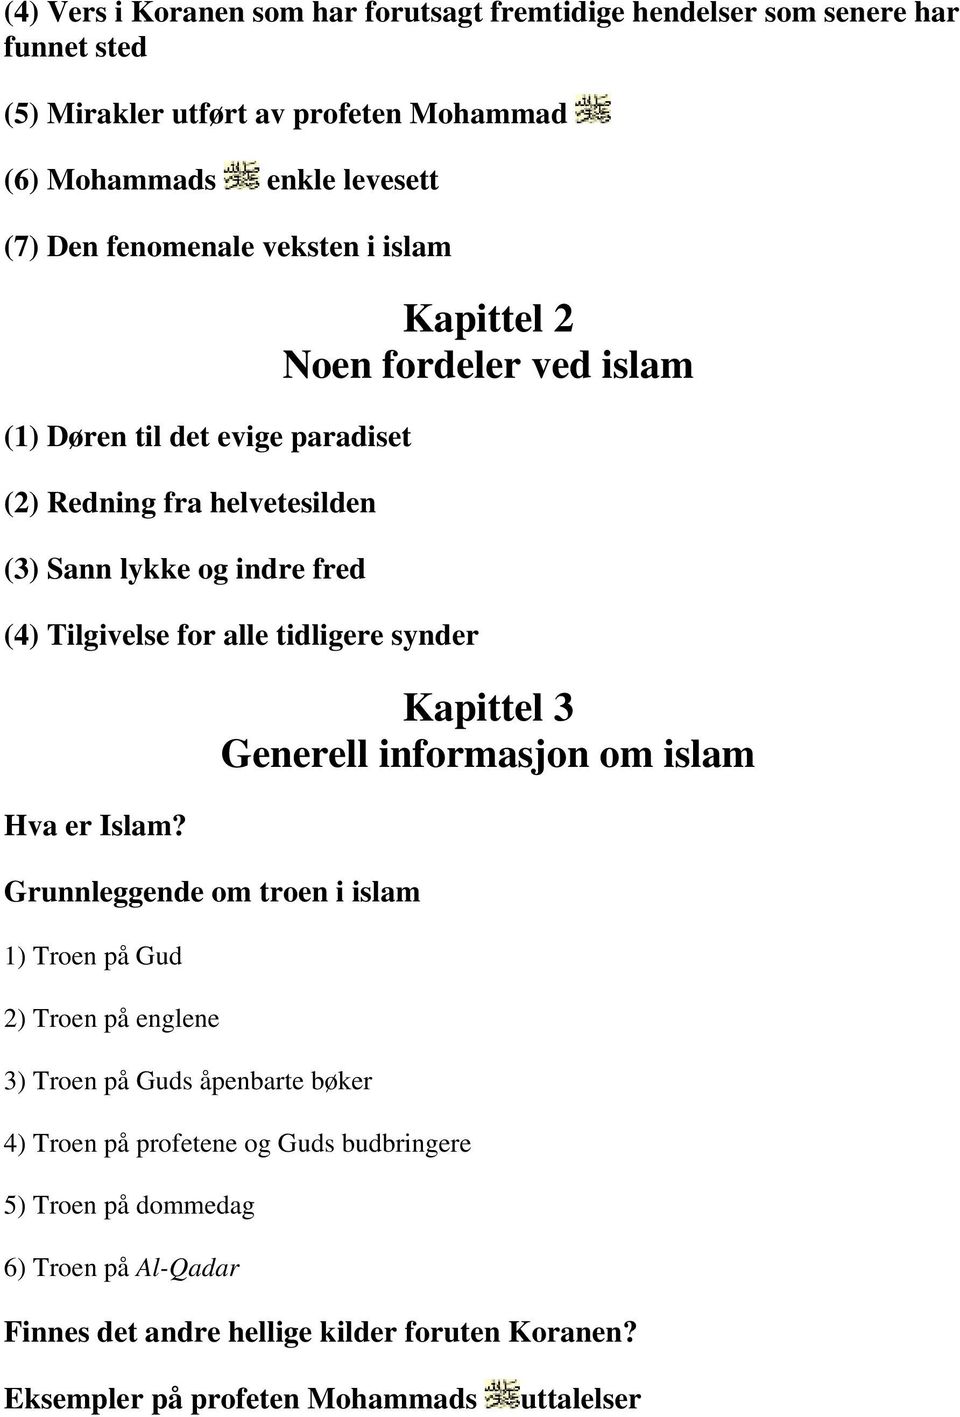 Islam?